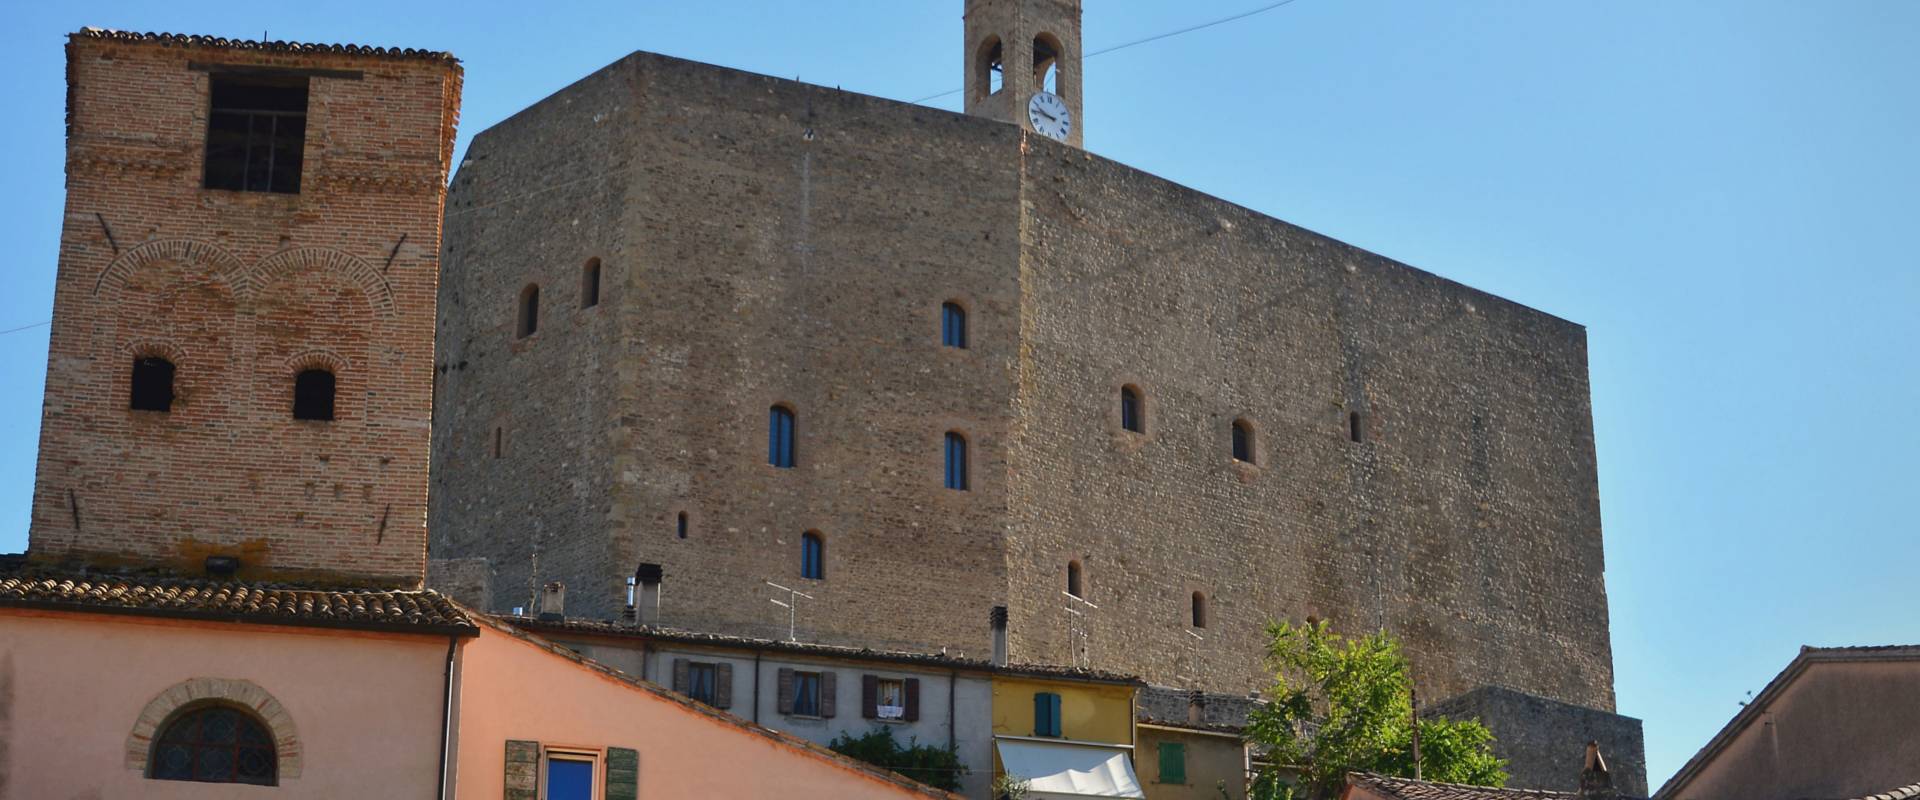 Rocca Malatestiana, Montefiore Conca photo by Sibilla Fanciulli